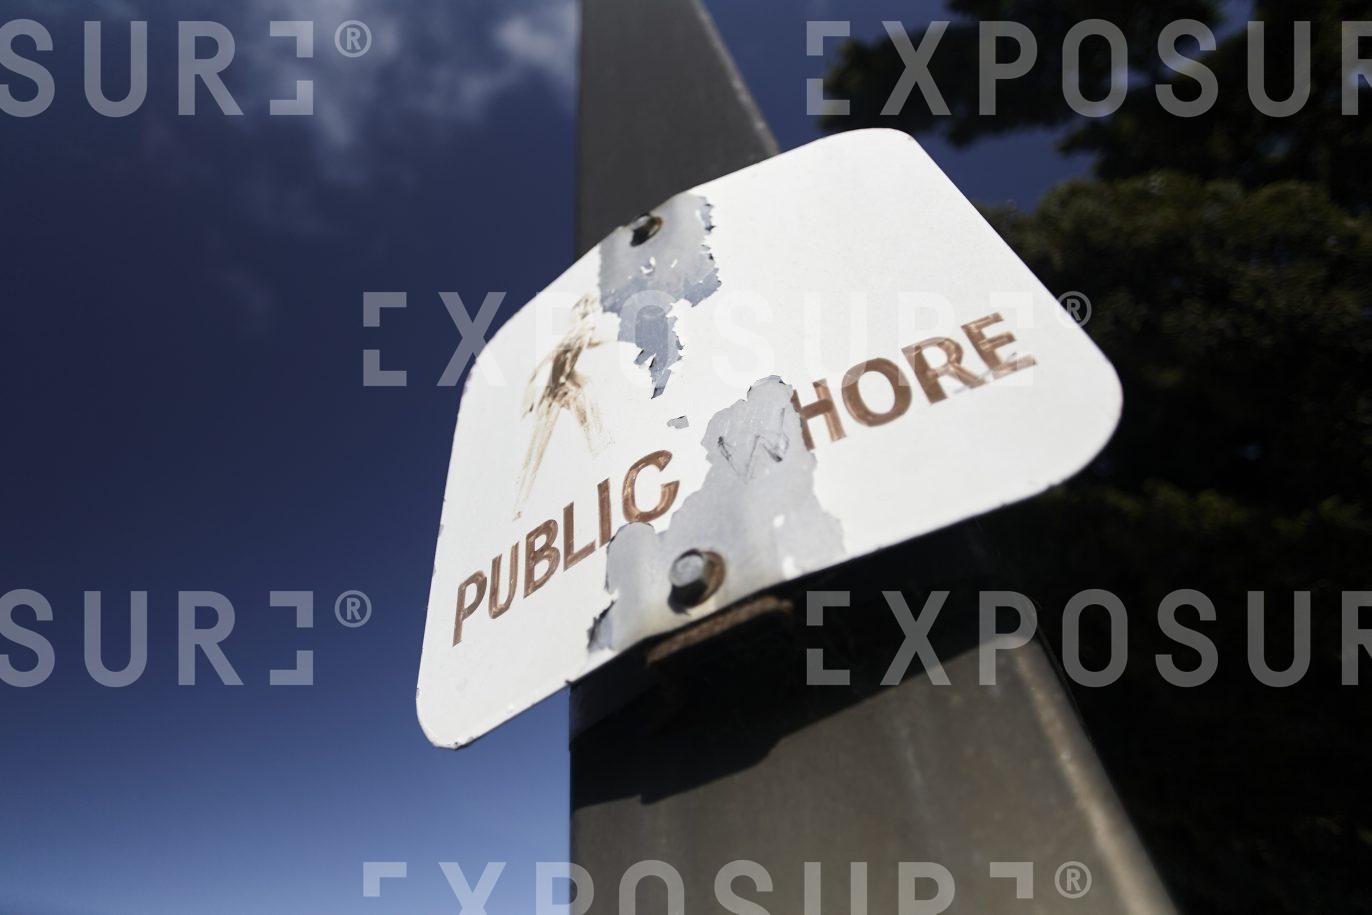 California, public shore sign (subverted)